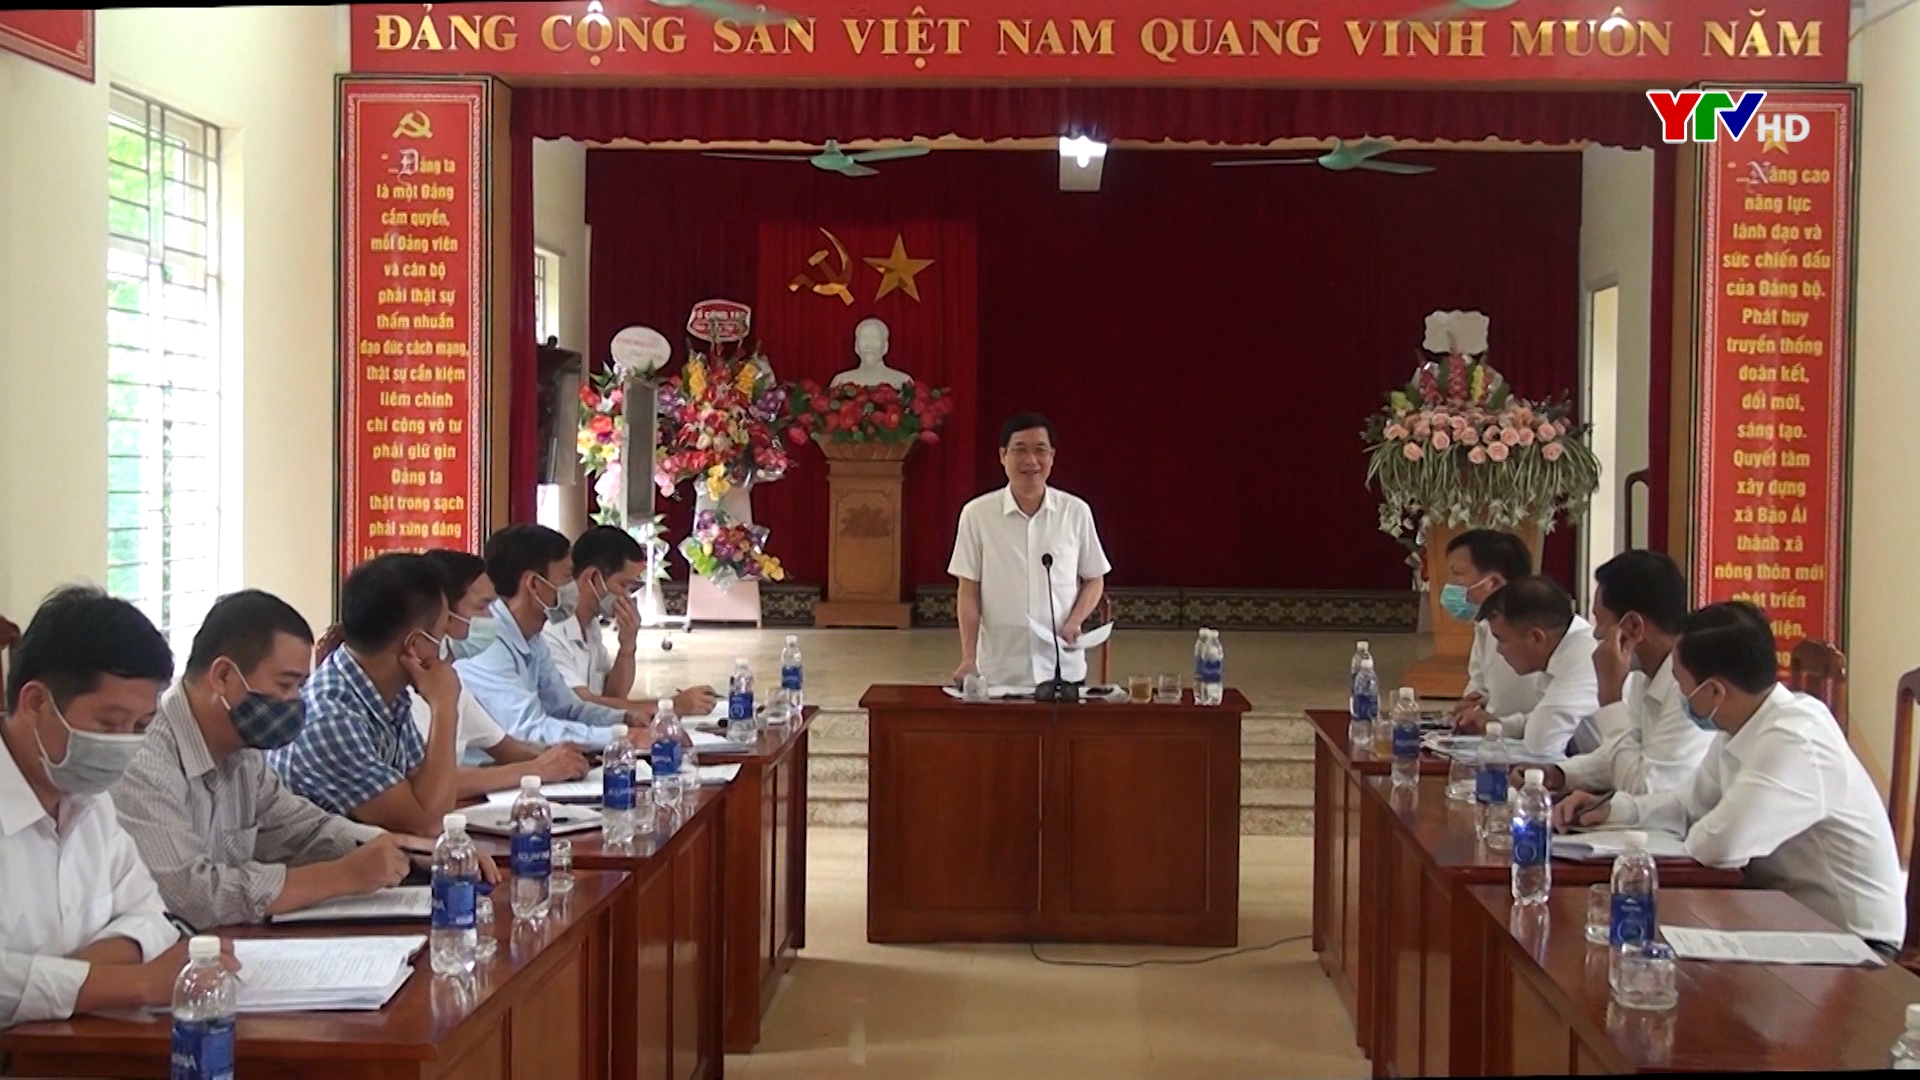 Đồng chí Trưởng Ban Tuyên giáo Tỉnh ủy Nguyễn Minh Tuấn làm việc tại xã Bảo Ái, huyện Yên Bình